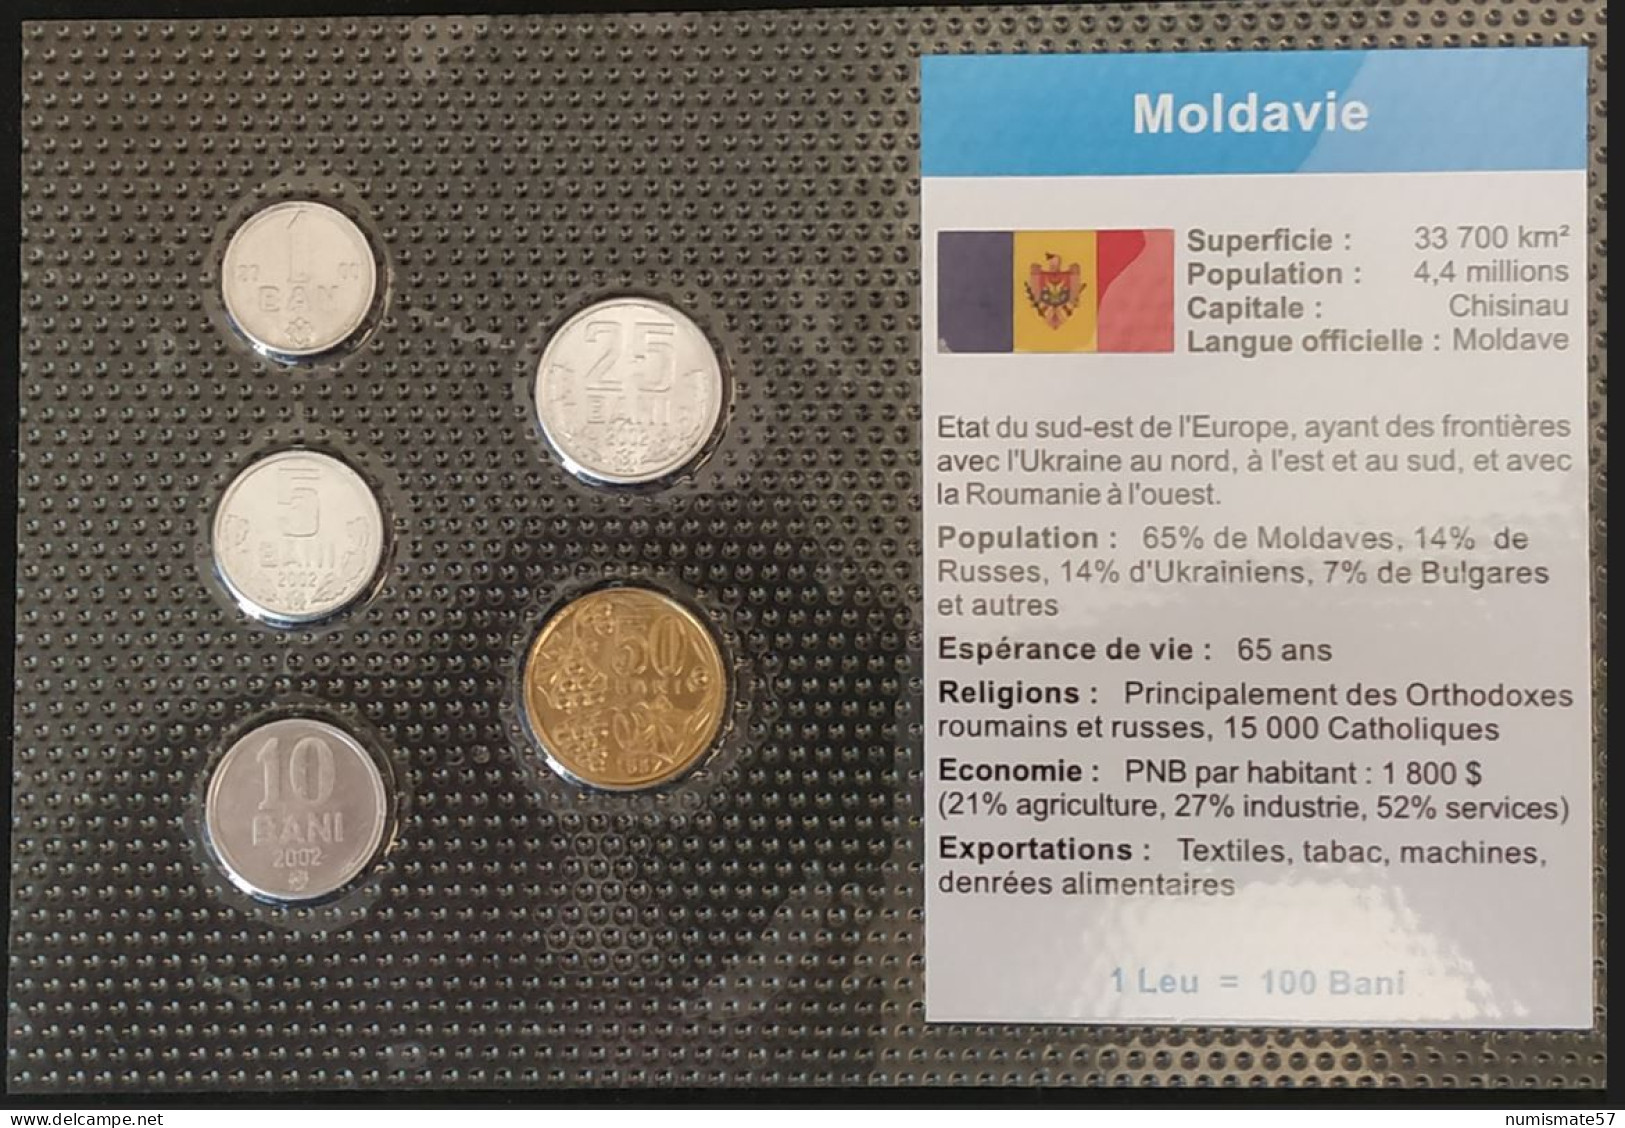 MOLDAVIE - MOLDAVIA - 1 BAN 2000 - KM 1 - 5 BANI 2002 - KM 2 - 10 BANI 2002 - KM 7 - 25 BANI 2002 - KM 3 - 50 BANI 1997 - Moldavia